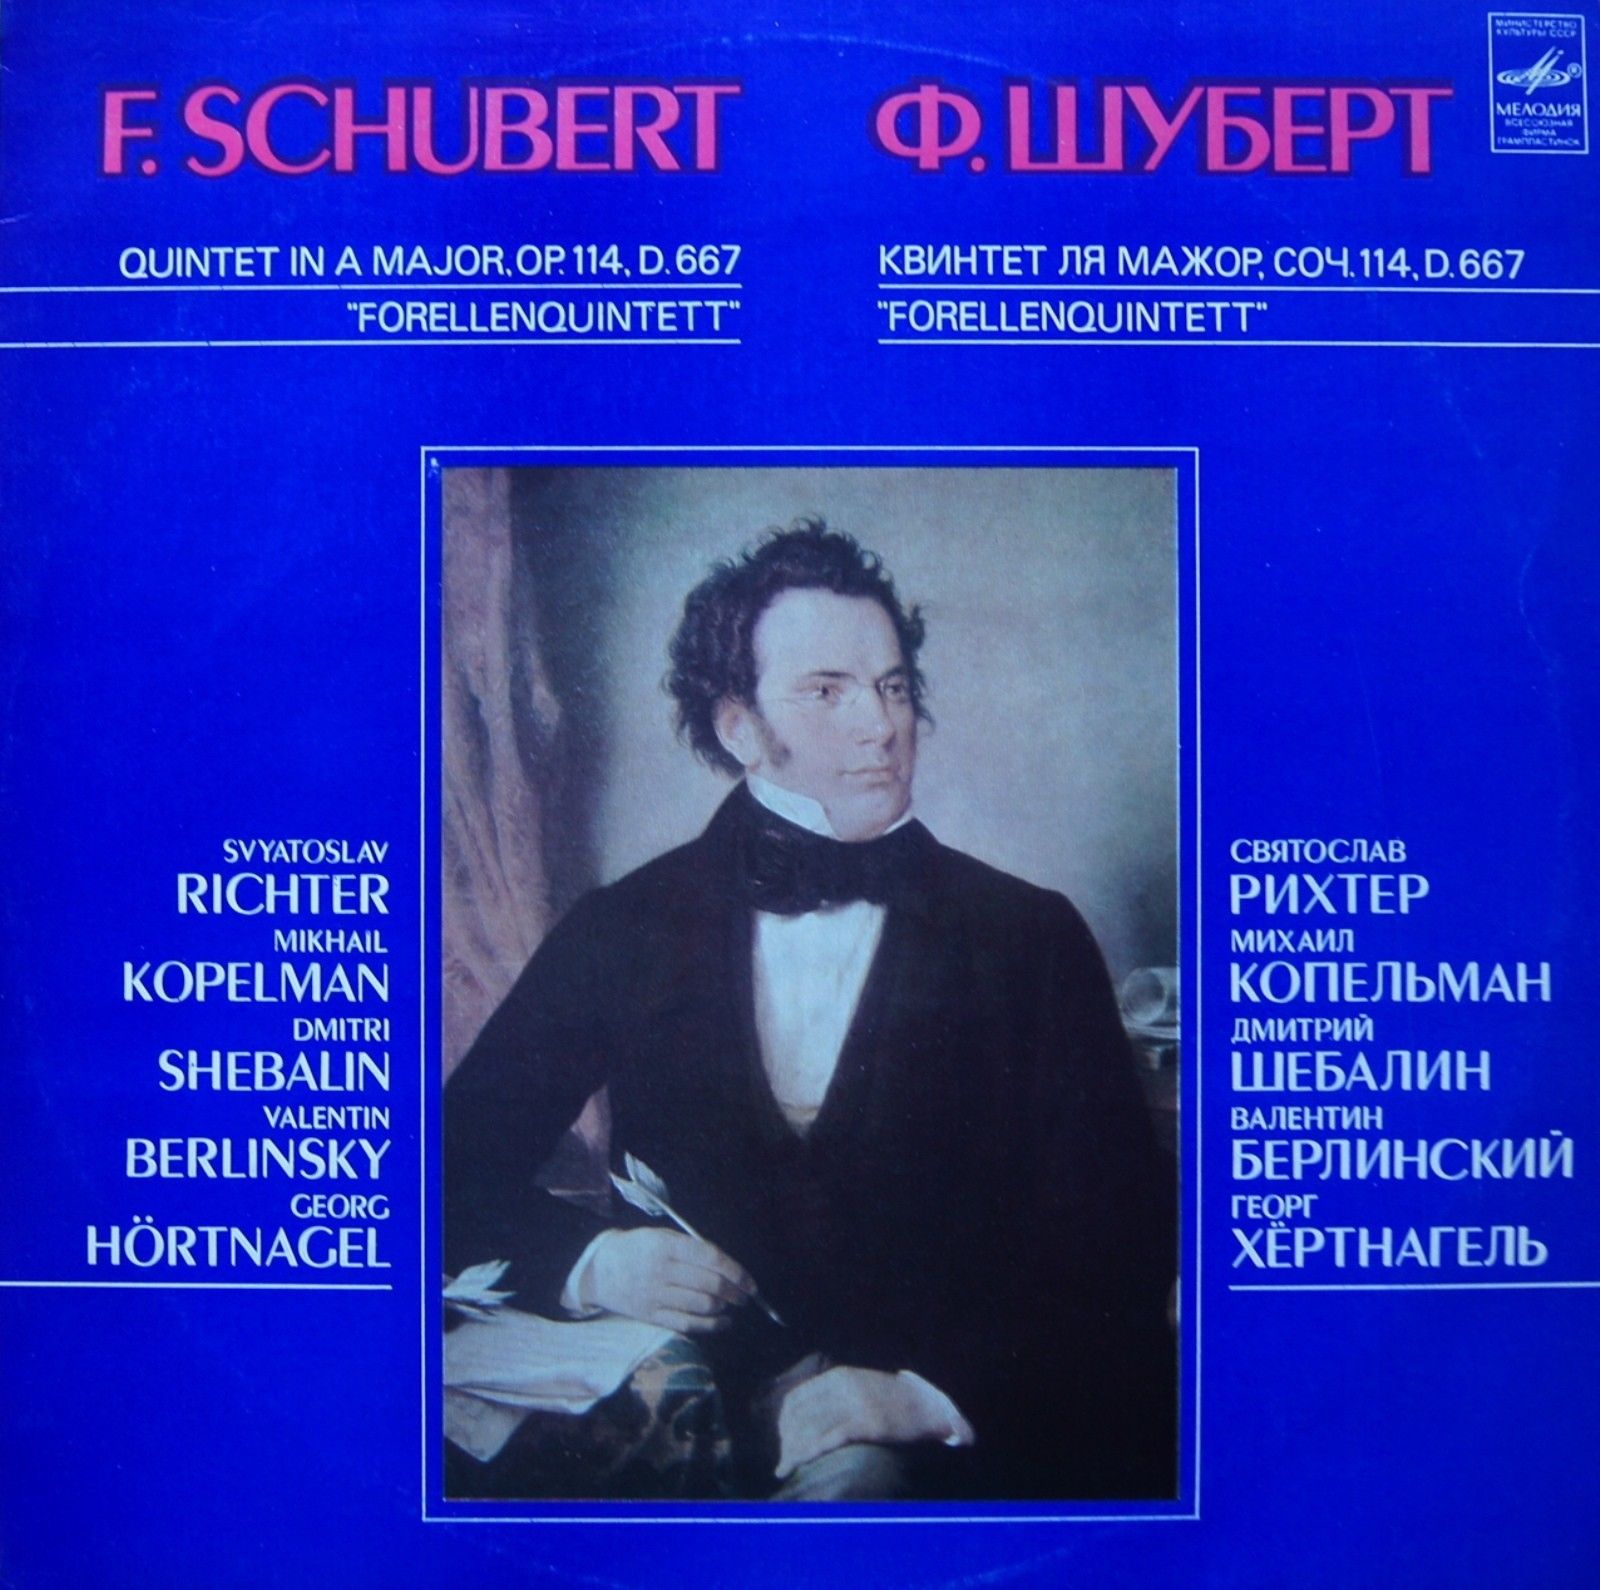 Ф. ШУБЕРТ (1797–1828): Квинтет для фортепиано, скрипки, альта, виолончели и контрабаса ля мажор, соч. 114 "Forellenquintet" (С. Рихтер и др.)